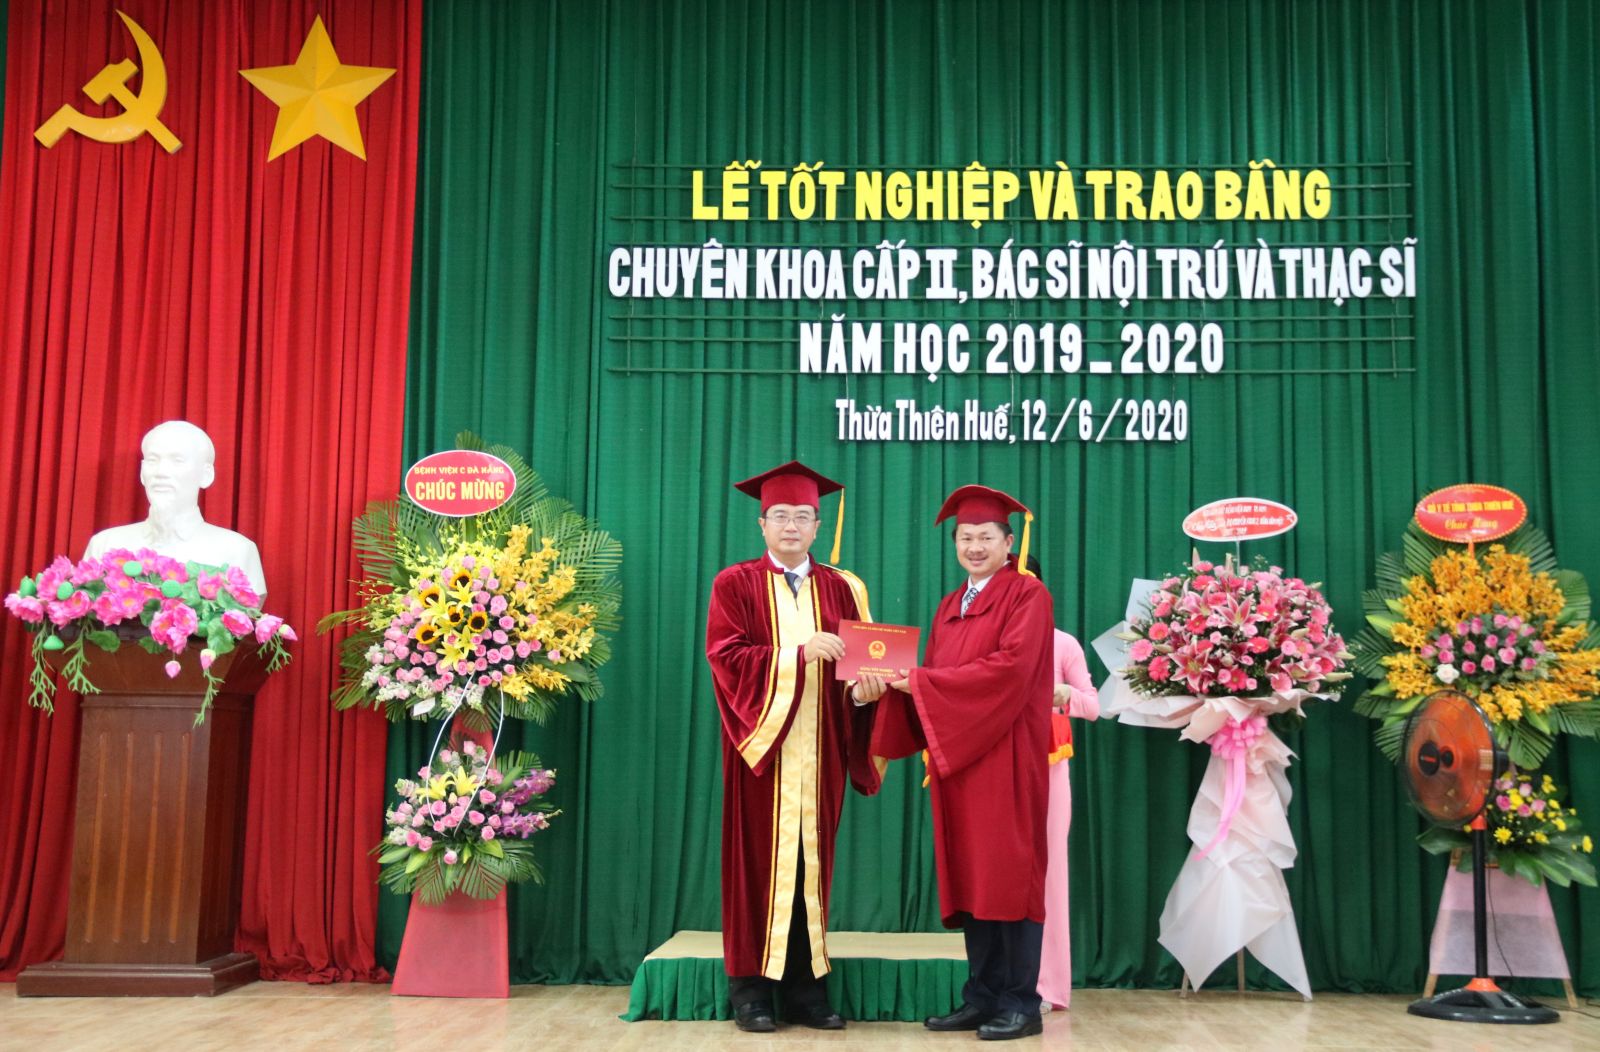 Lễ tốt nghiệp và trao Bằng tốt nghiệp Chuyên khoa II, Bác sĩ nội trú và Thạc sĩ năm học 2019 - 2020